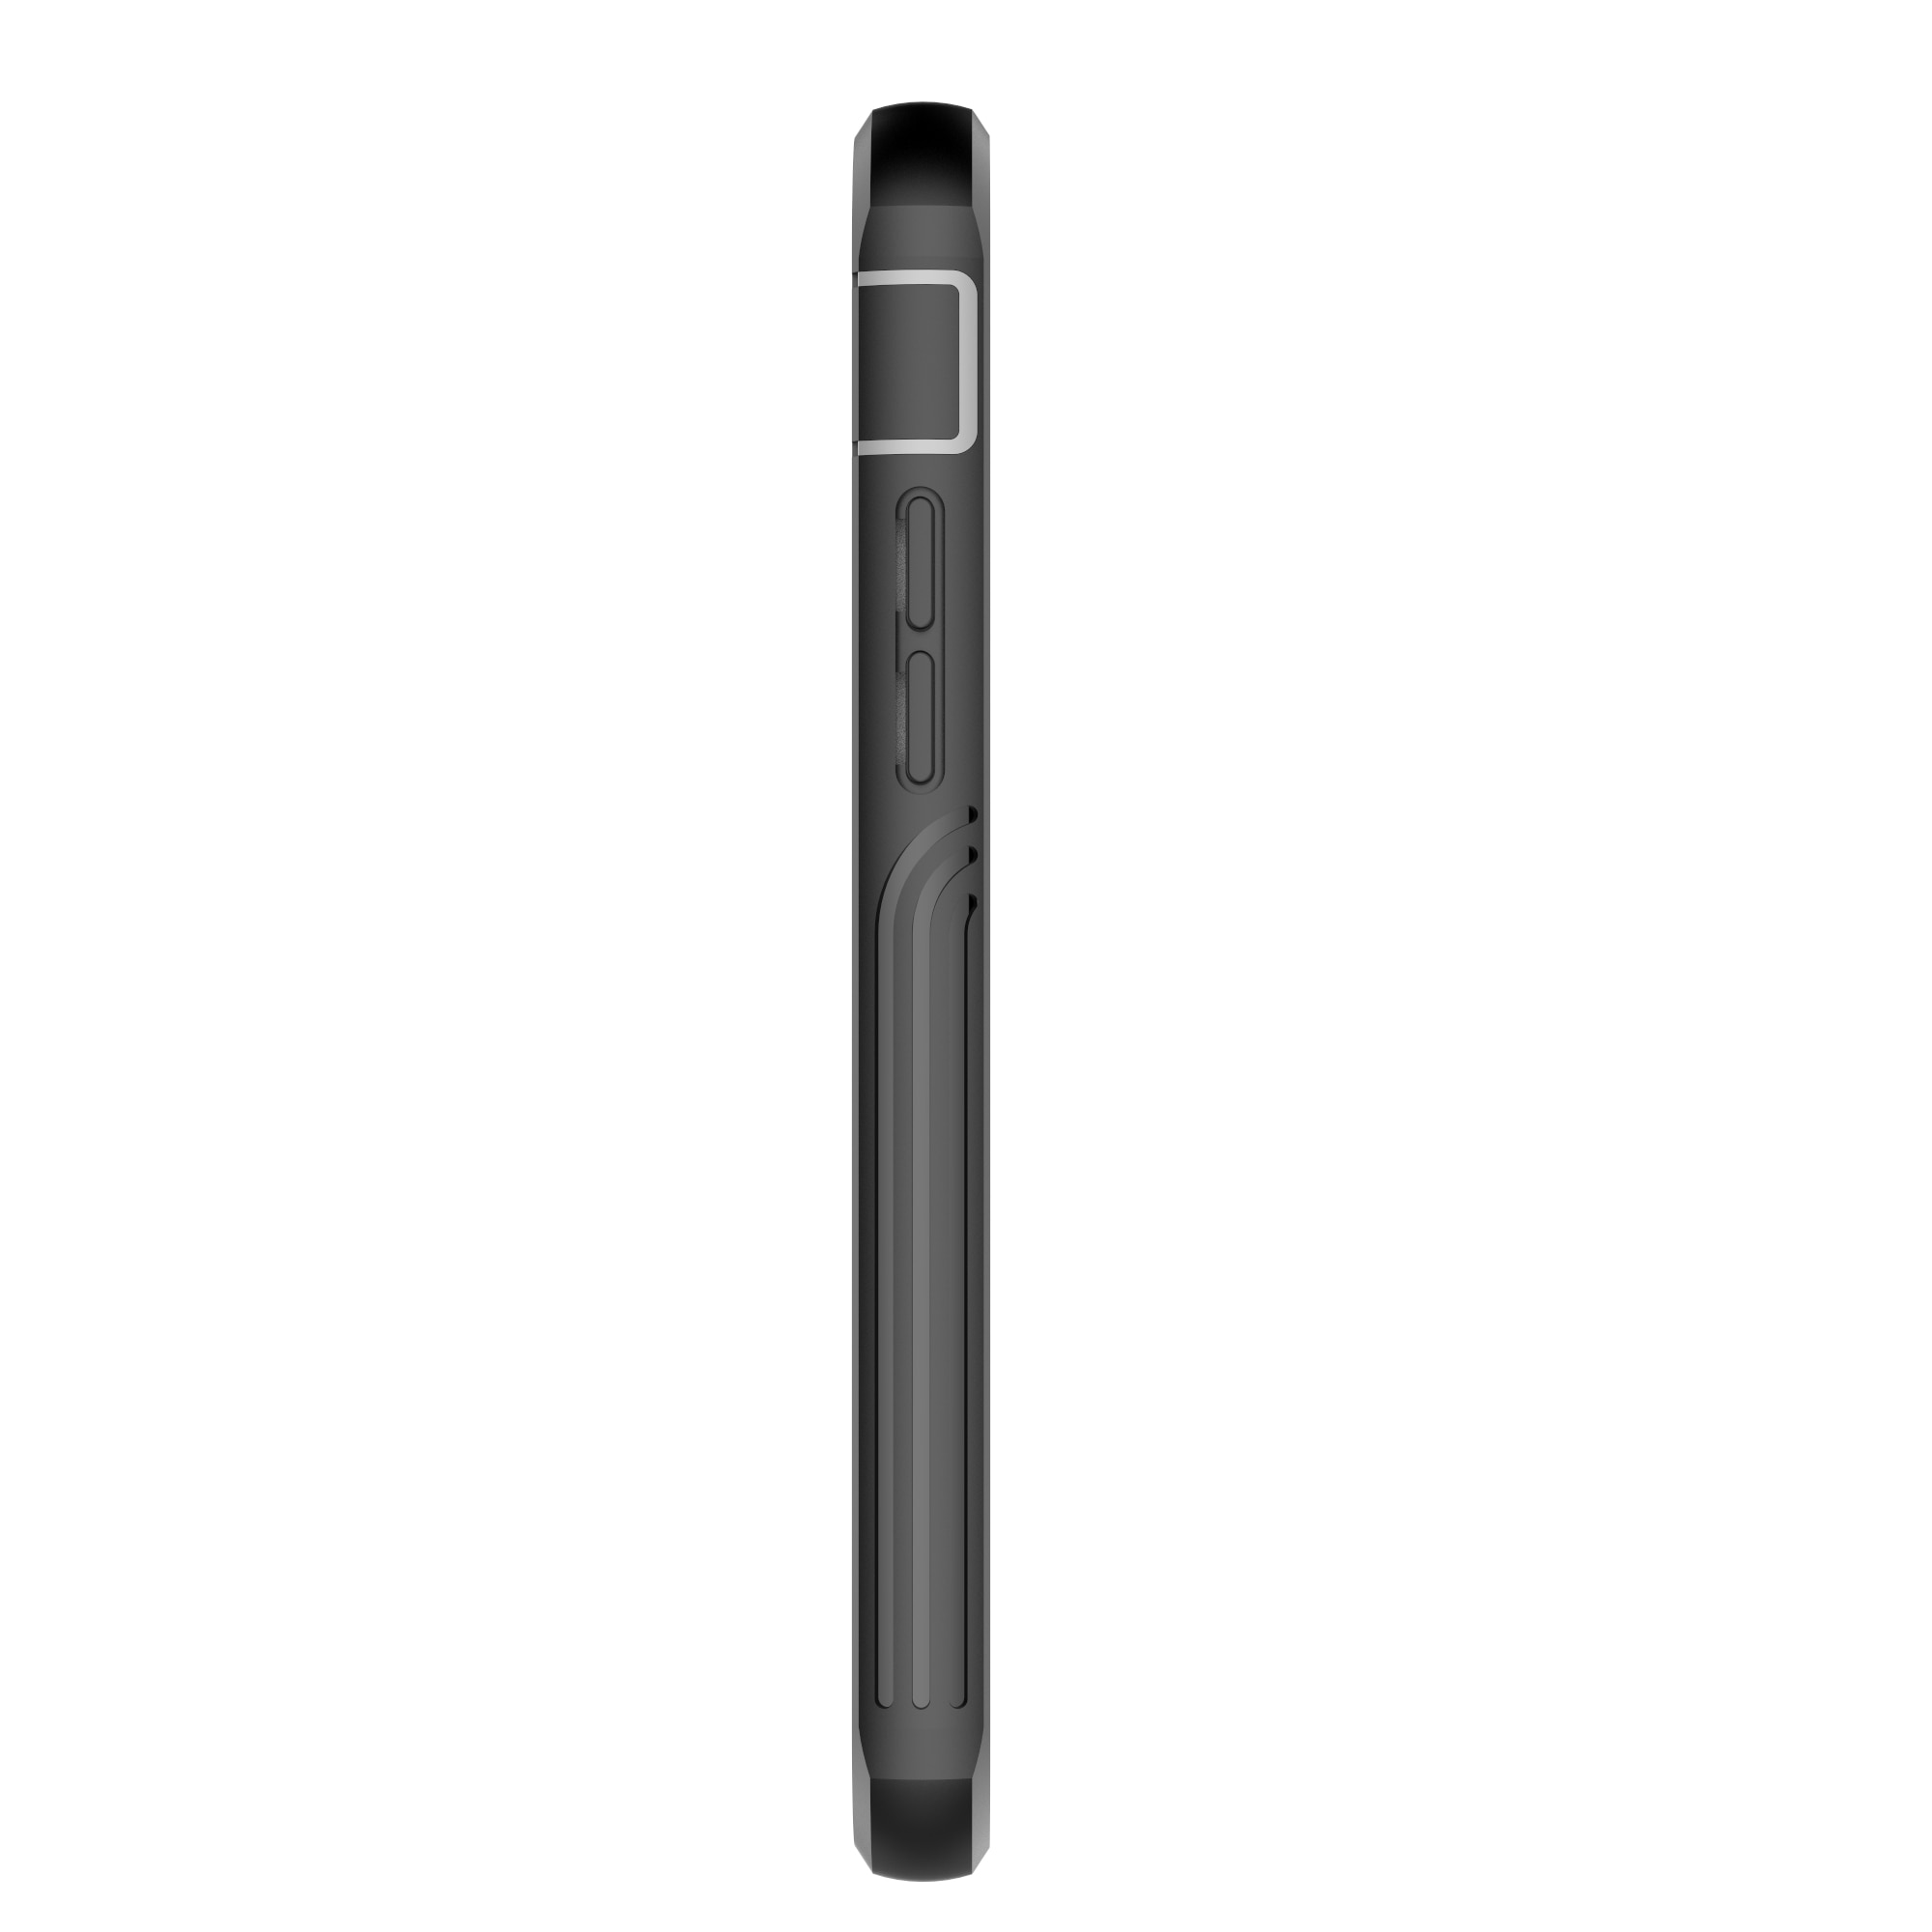 Coque Premium Full Protection iPhone SE (2020), noir